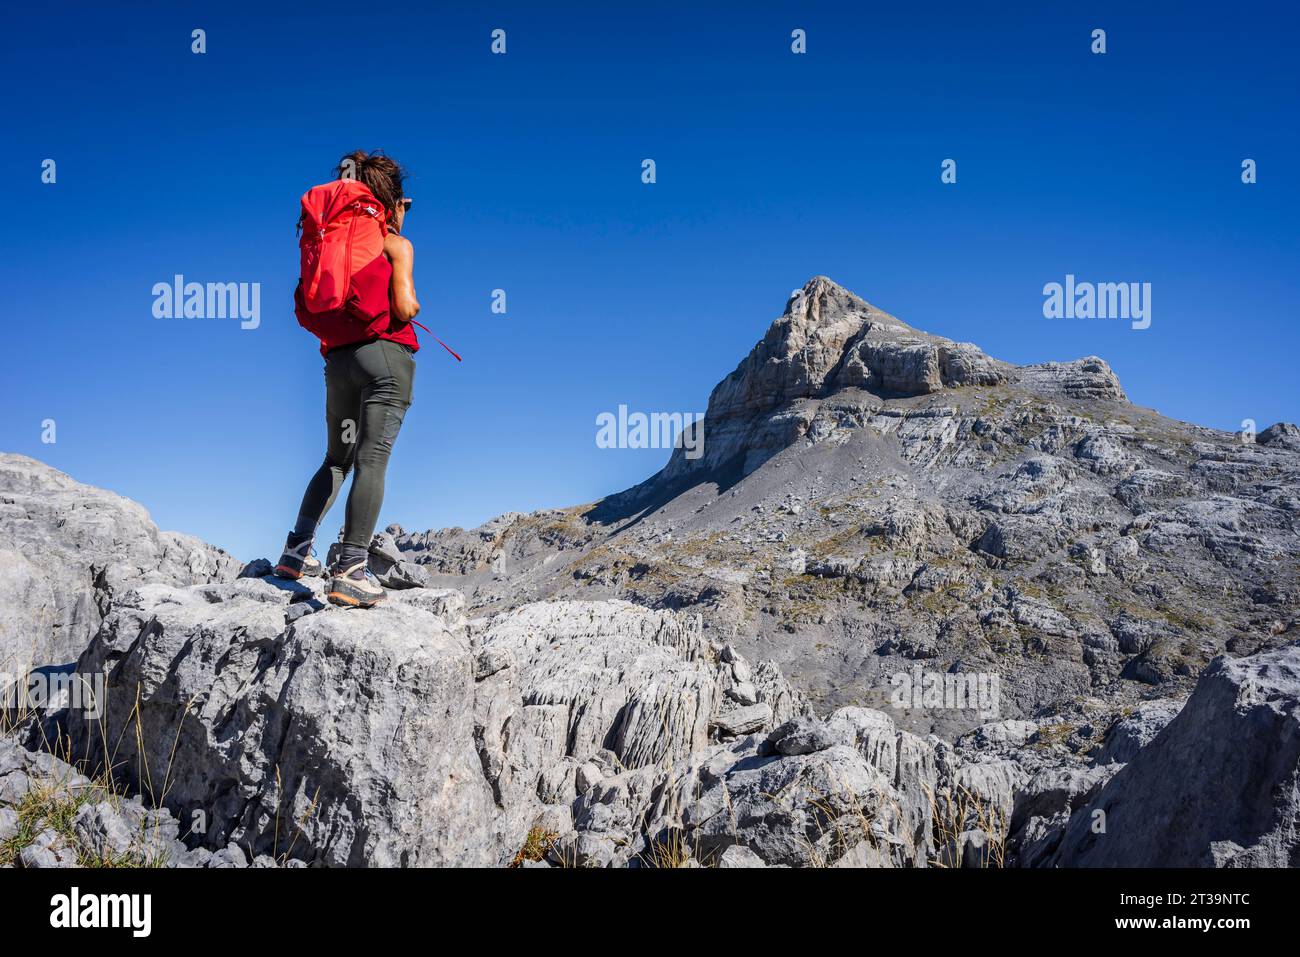 Femme observant le sommet, pic Anie, plateau calcaire de Larra, Pyrénées navarraises-françaises, Navarre, Espagne Banque D'Images